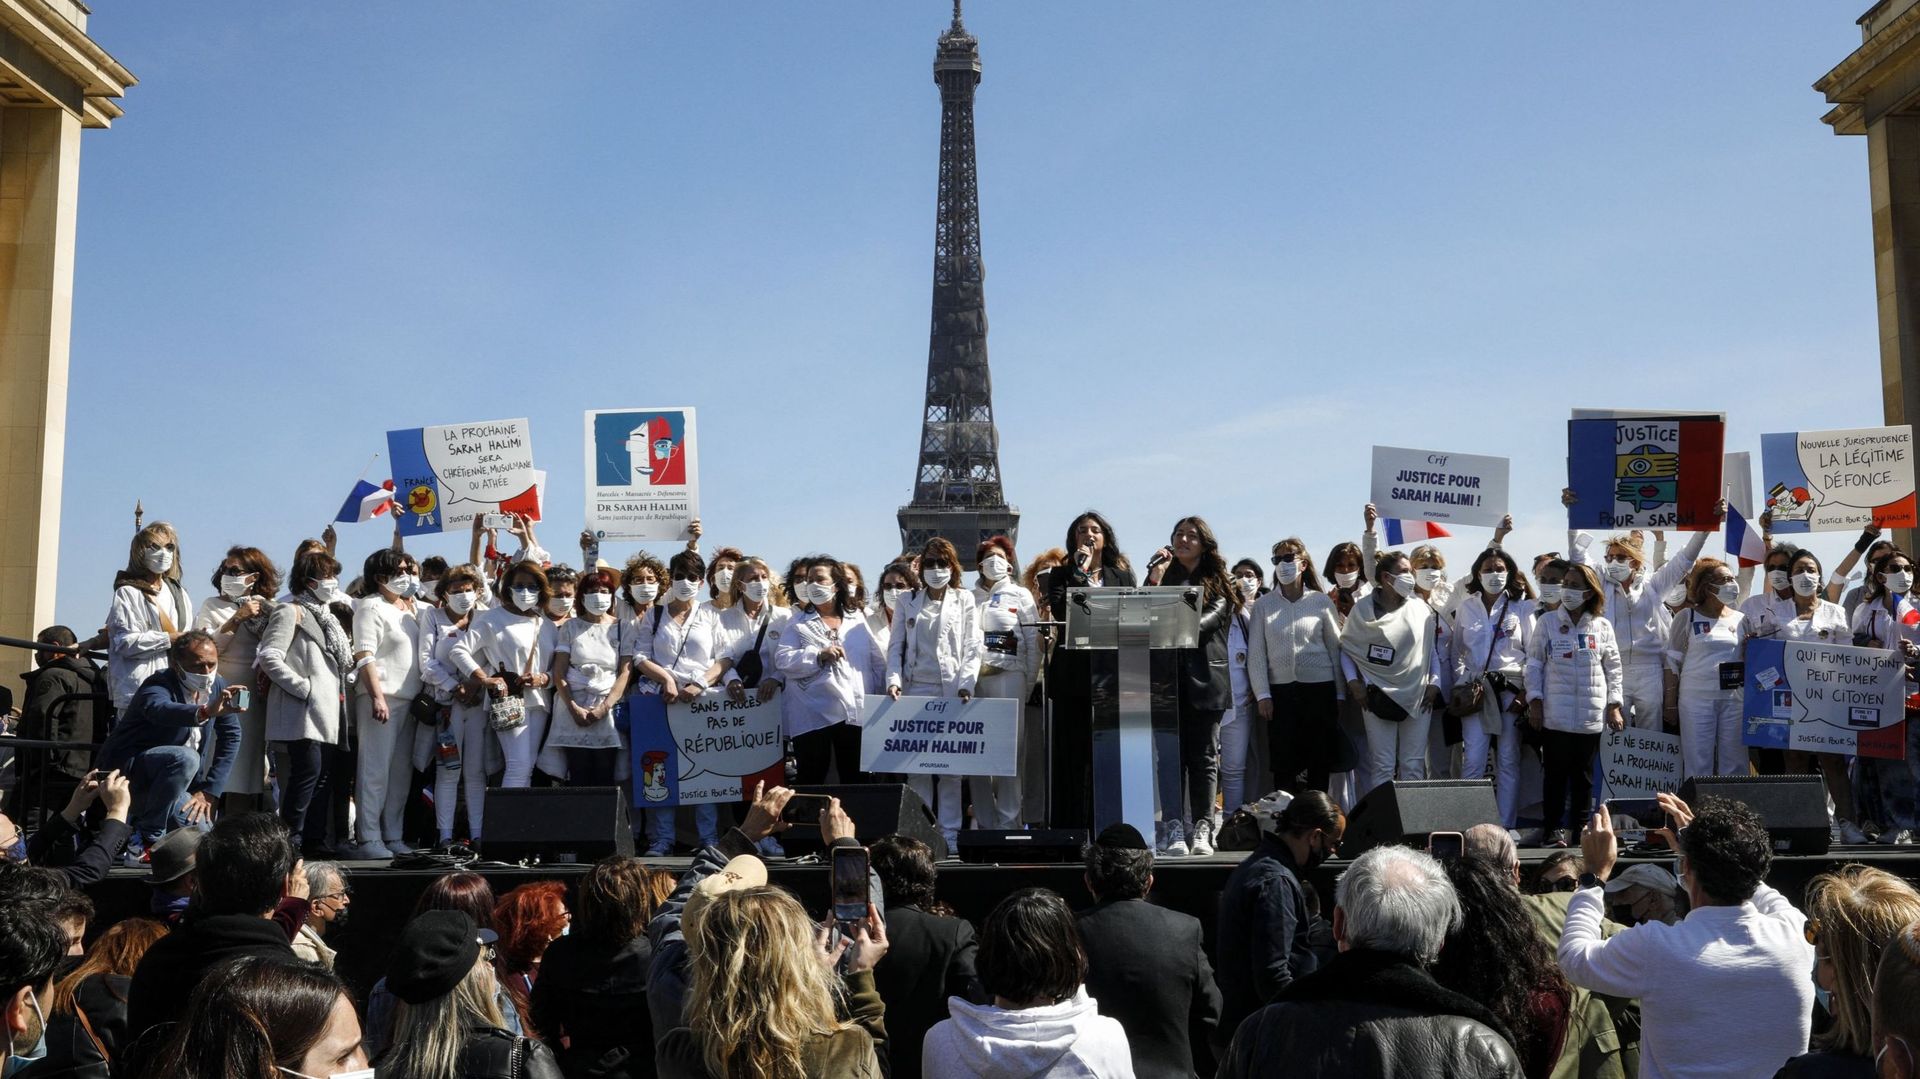 France: plusieurs milliers de manifestants pour réclamer "justice pour Sarah Halimi"